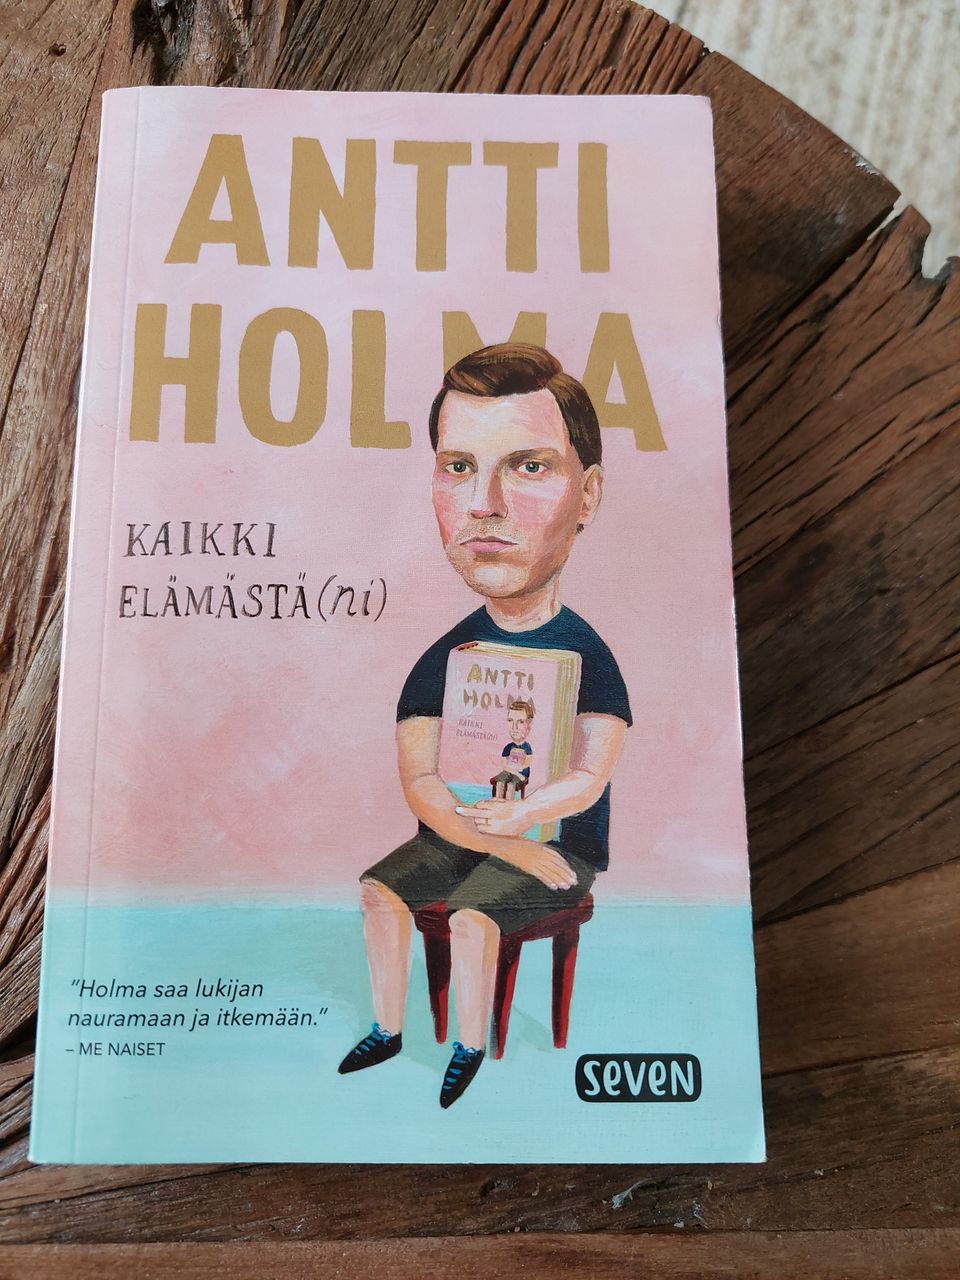 Antti Holma, Kaikki elämästä(ni)